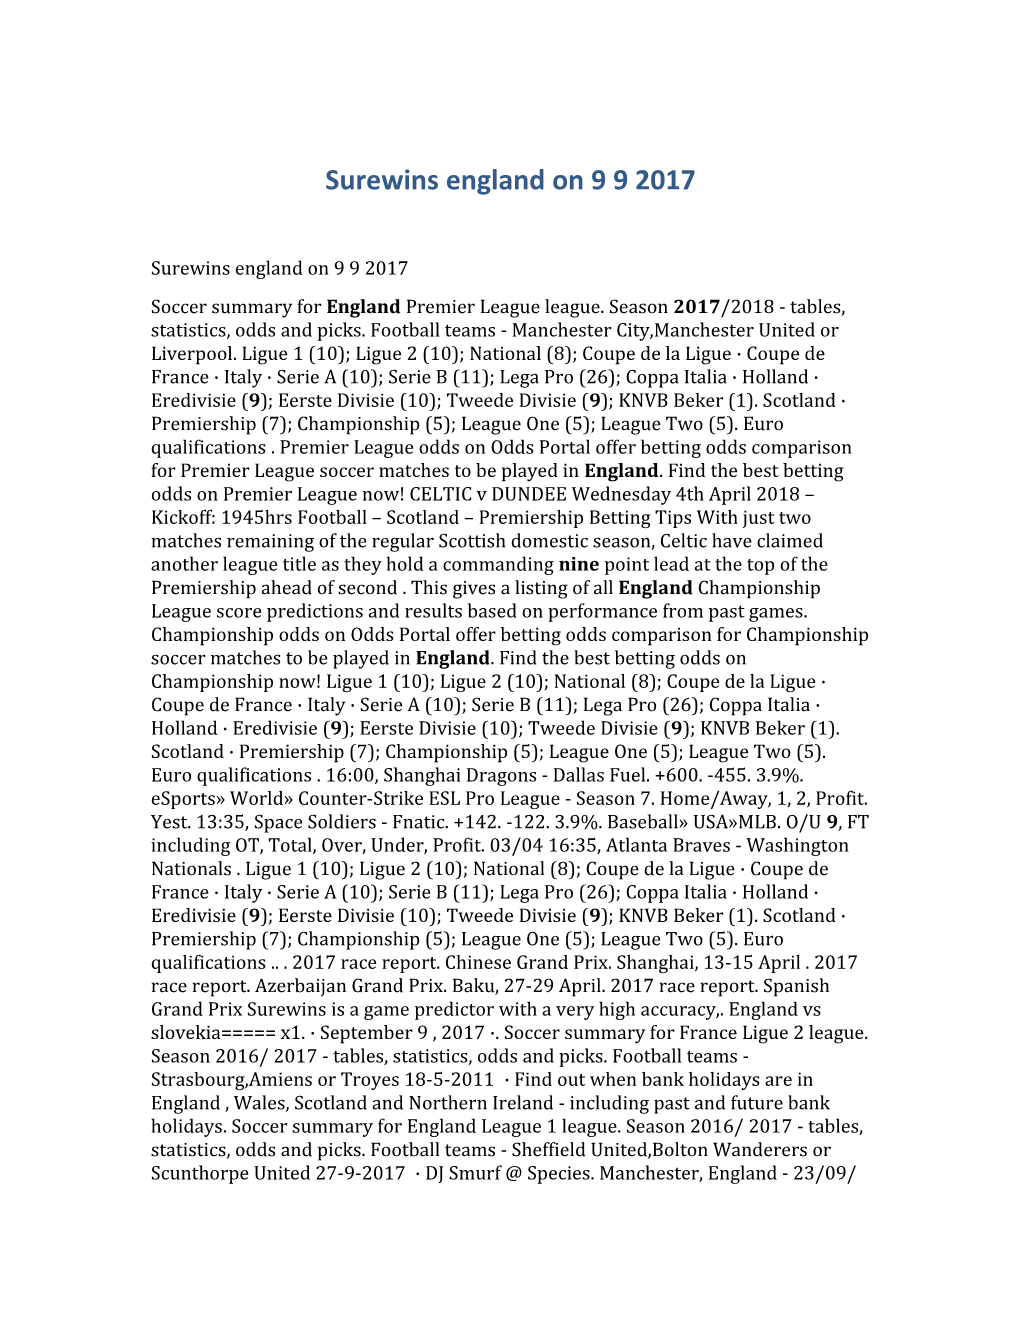 Surewins England on 9 9 2017